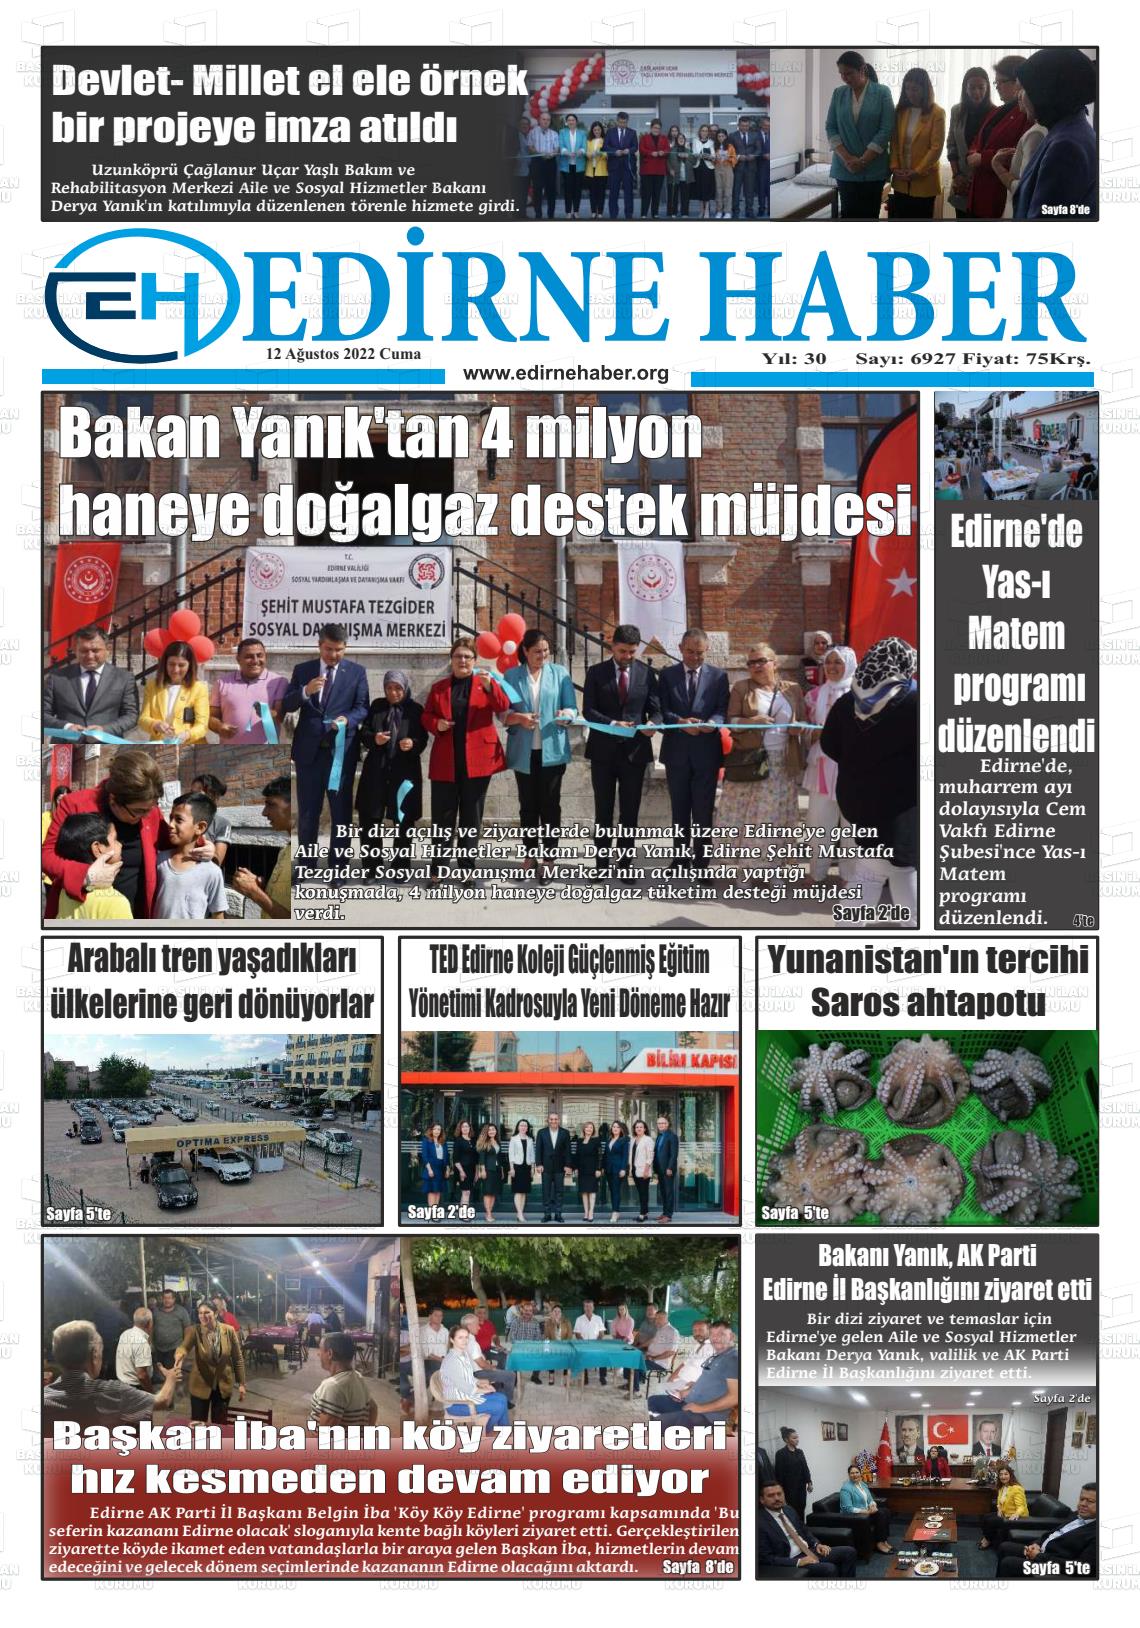 12 Ağustos 2022 edirne haber Gazete Manşeti